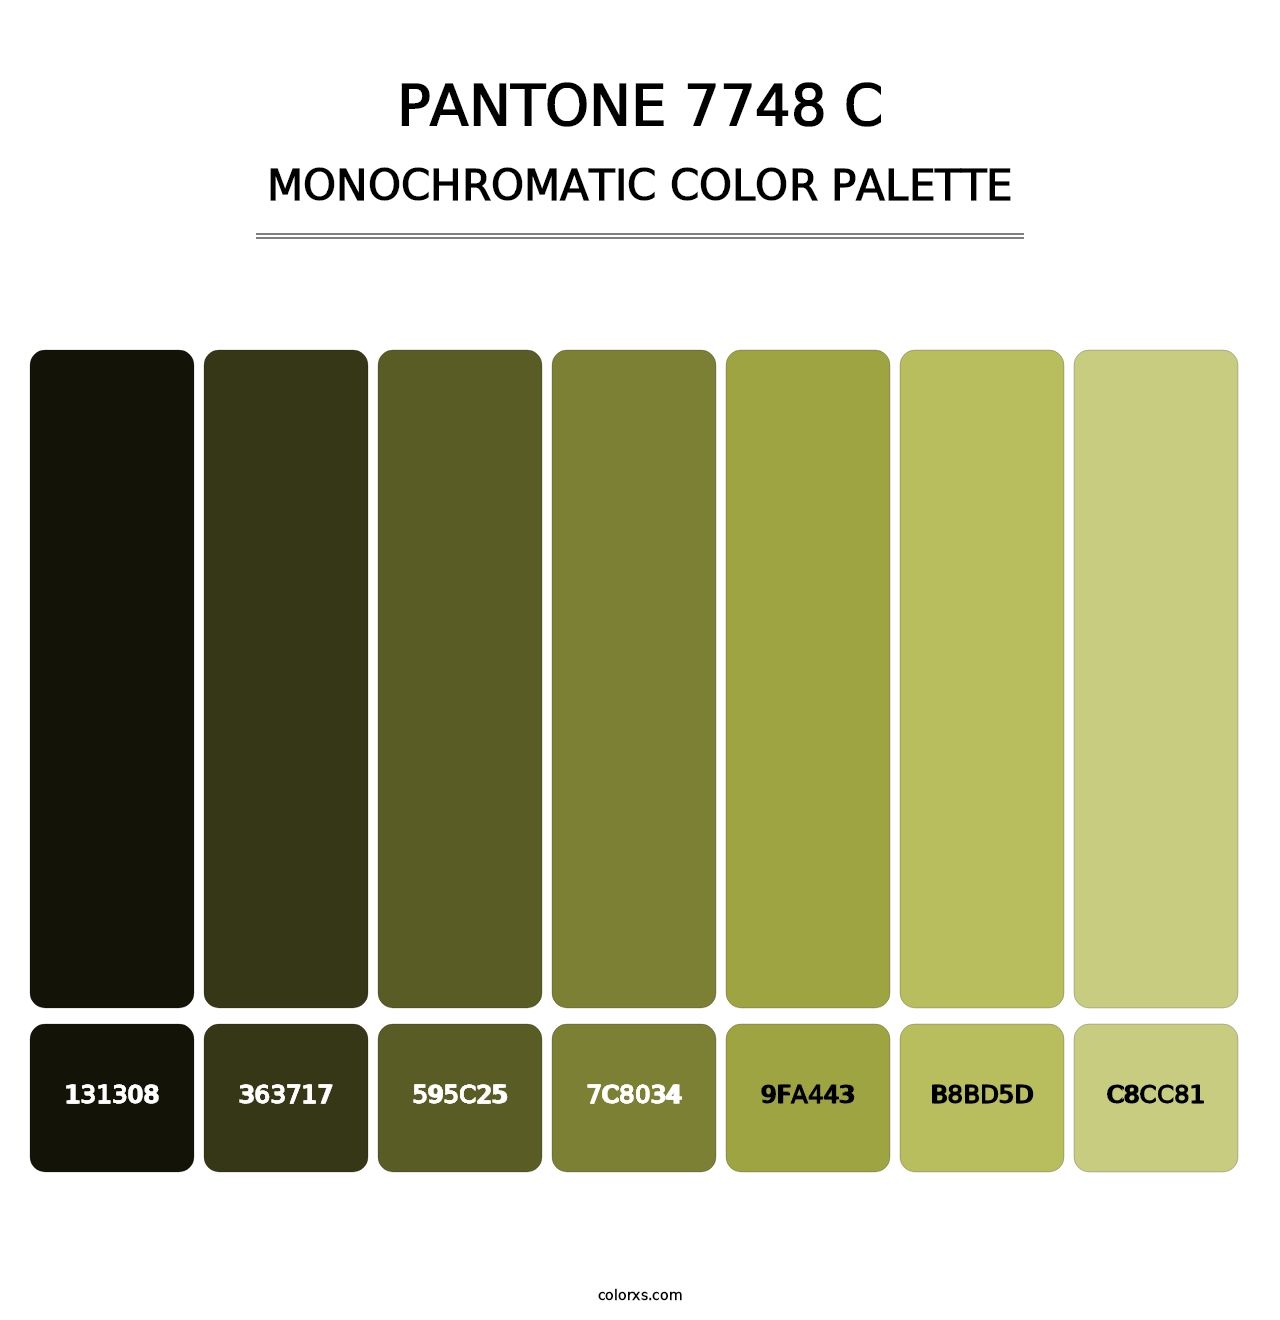 PANTONE 7748 C - Monochromatic Color Palette